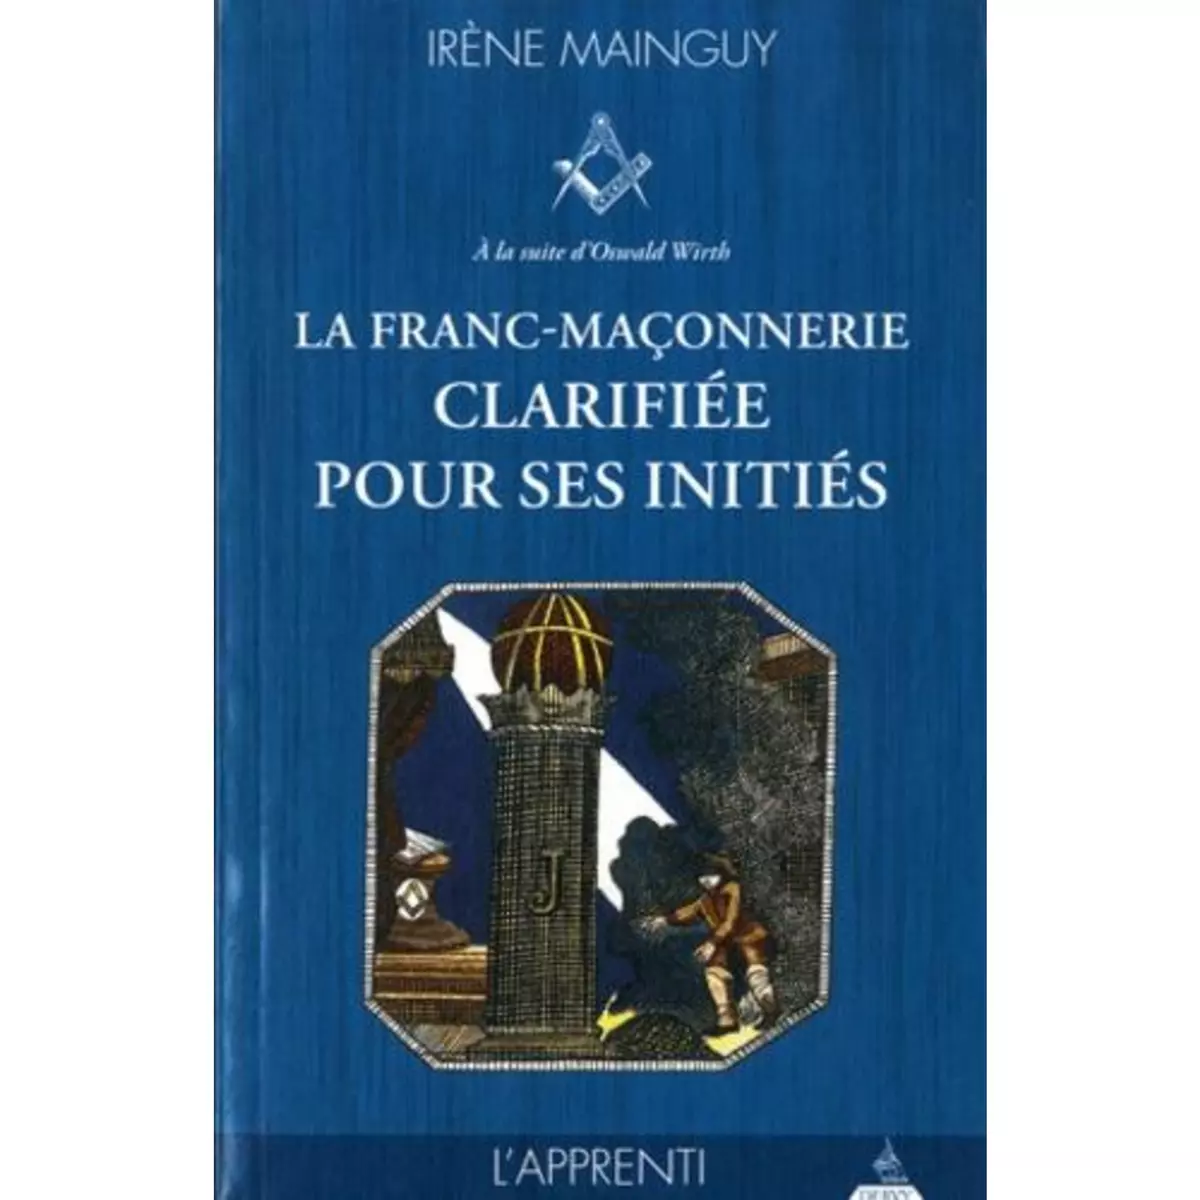  LA FRANC-MACONNERIE CLARIFIEE POUR SES INITIES. TOME 1, L'APPRENTI, Mainguy Irène